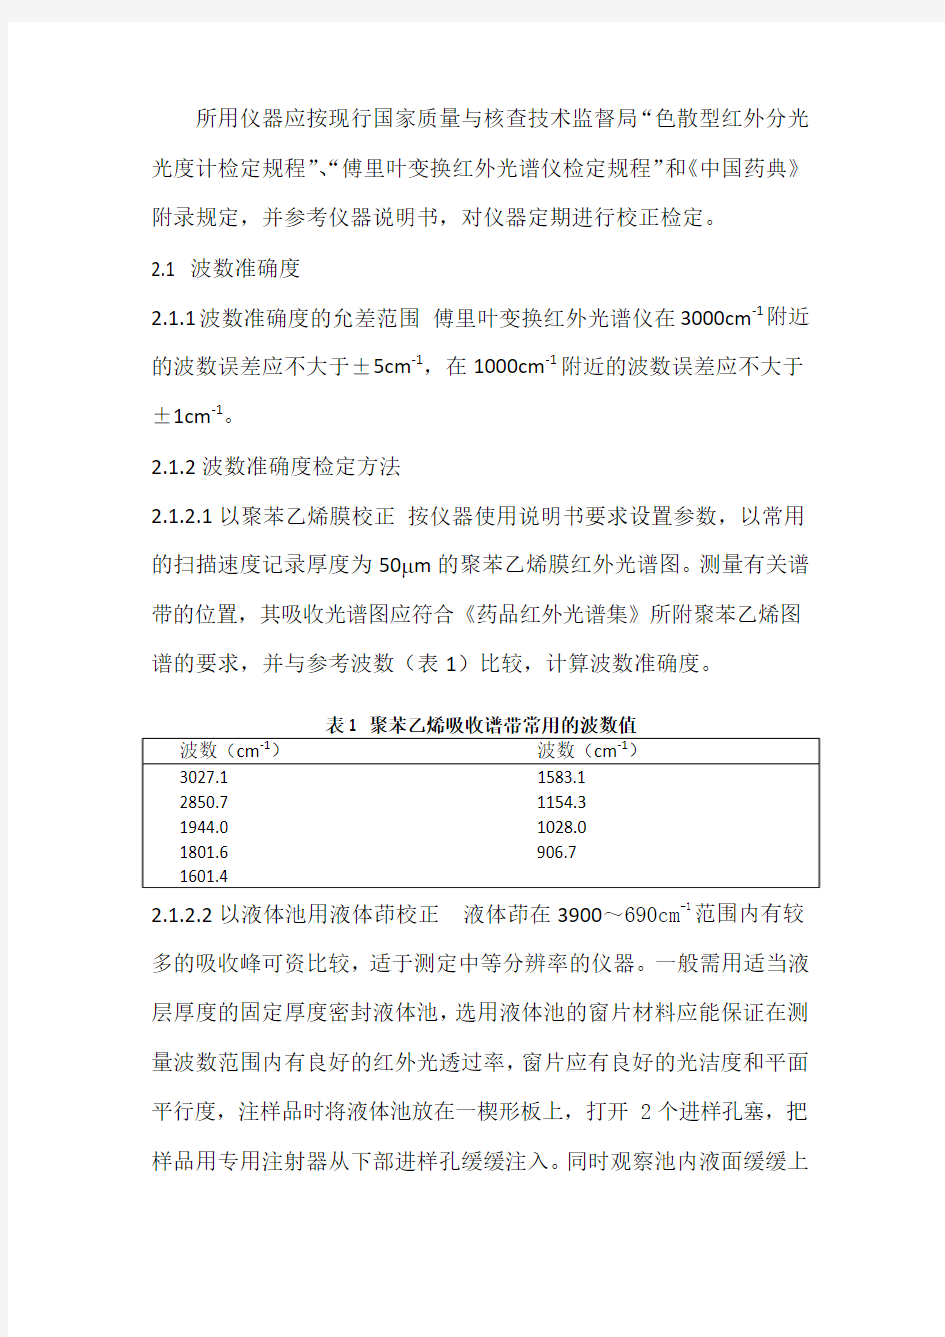 红外分光光度法 中国药品检验标准操作规范 2010年版